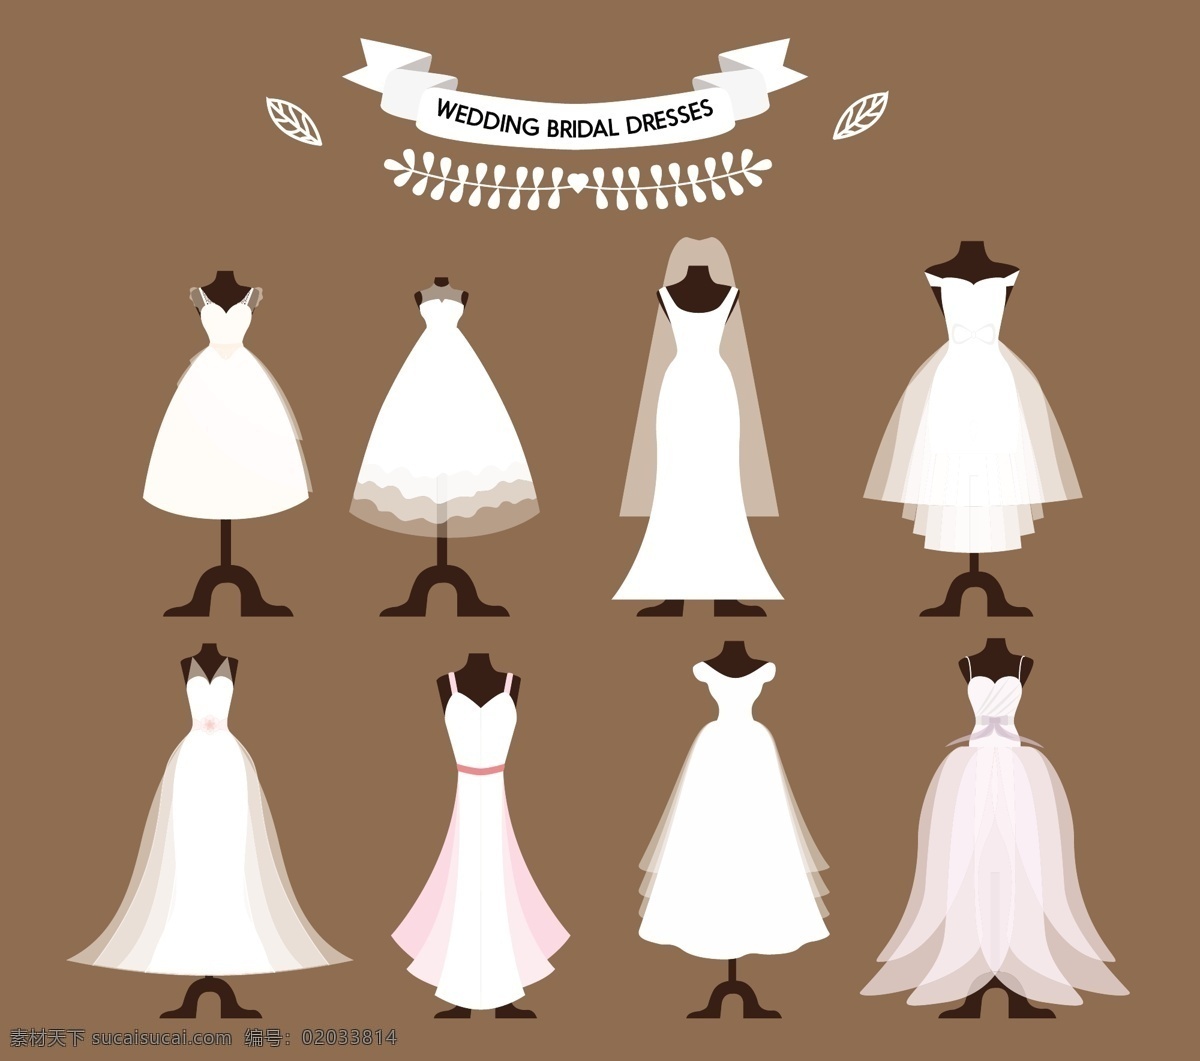 新娘 礼服 集合 向量 插图 不同 风格 自由 衣服 婚纱 结婚 新娘礼服 矢量图